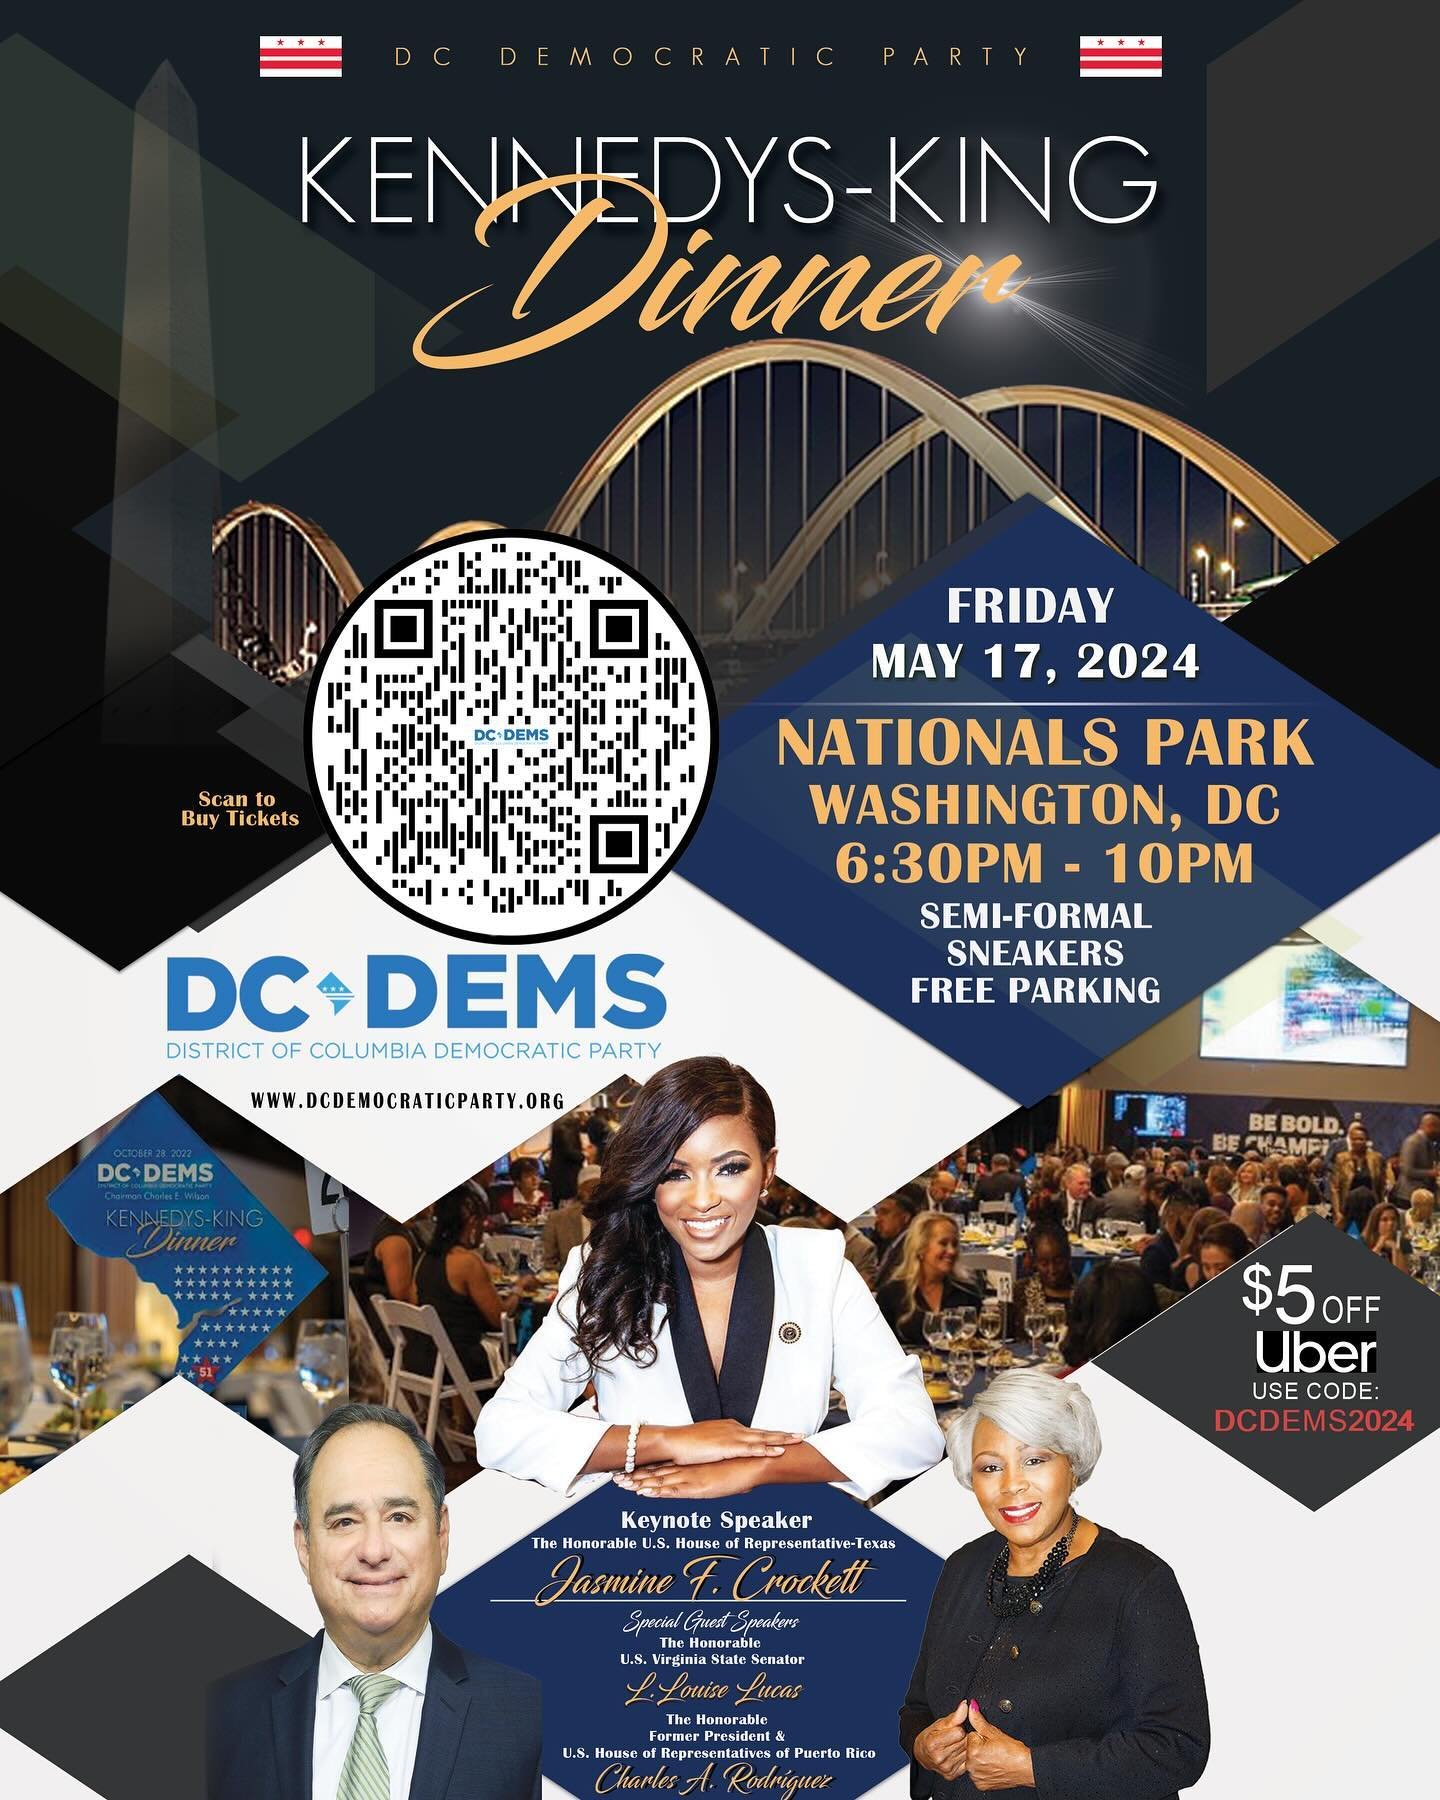 Join us Friday, May 17 at Nats Park for the Kennedys-King Dinner! Learn more at ward2democrats.org #ward2 #ward2dems #democrats